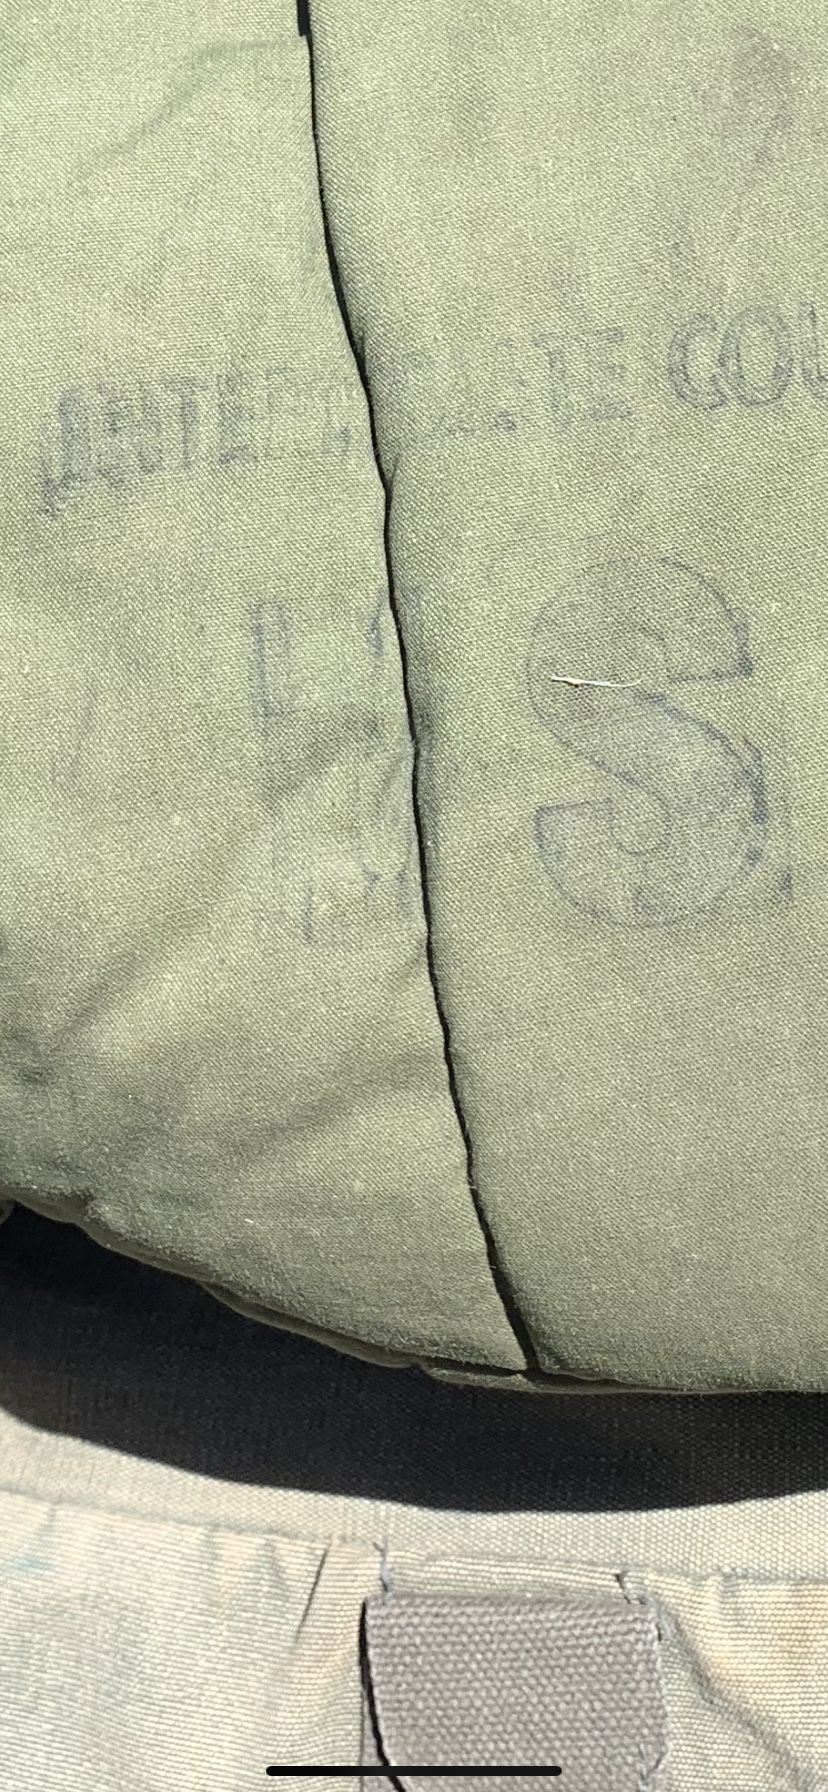 Vintage US Miliatary Sleeping Bag